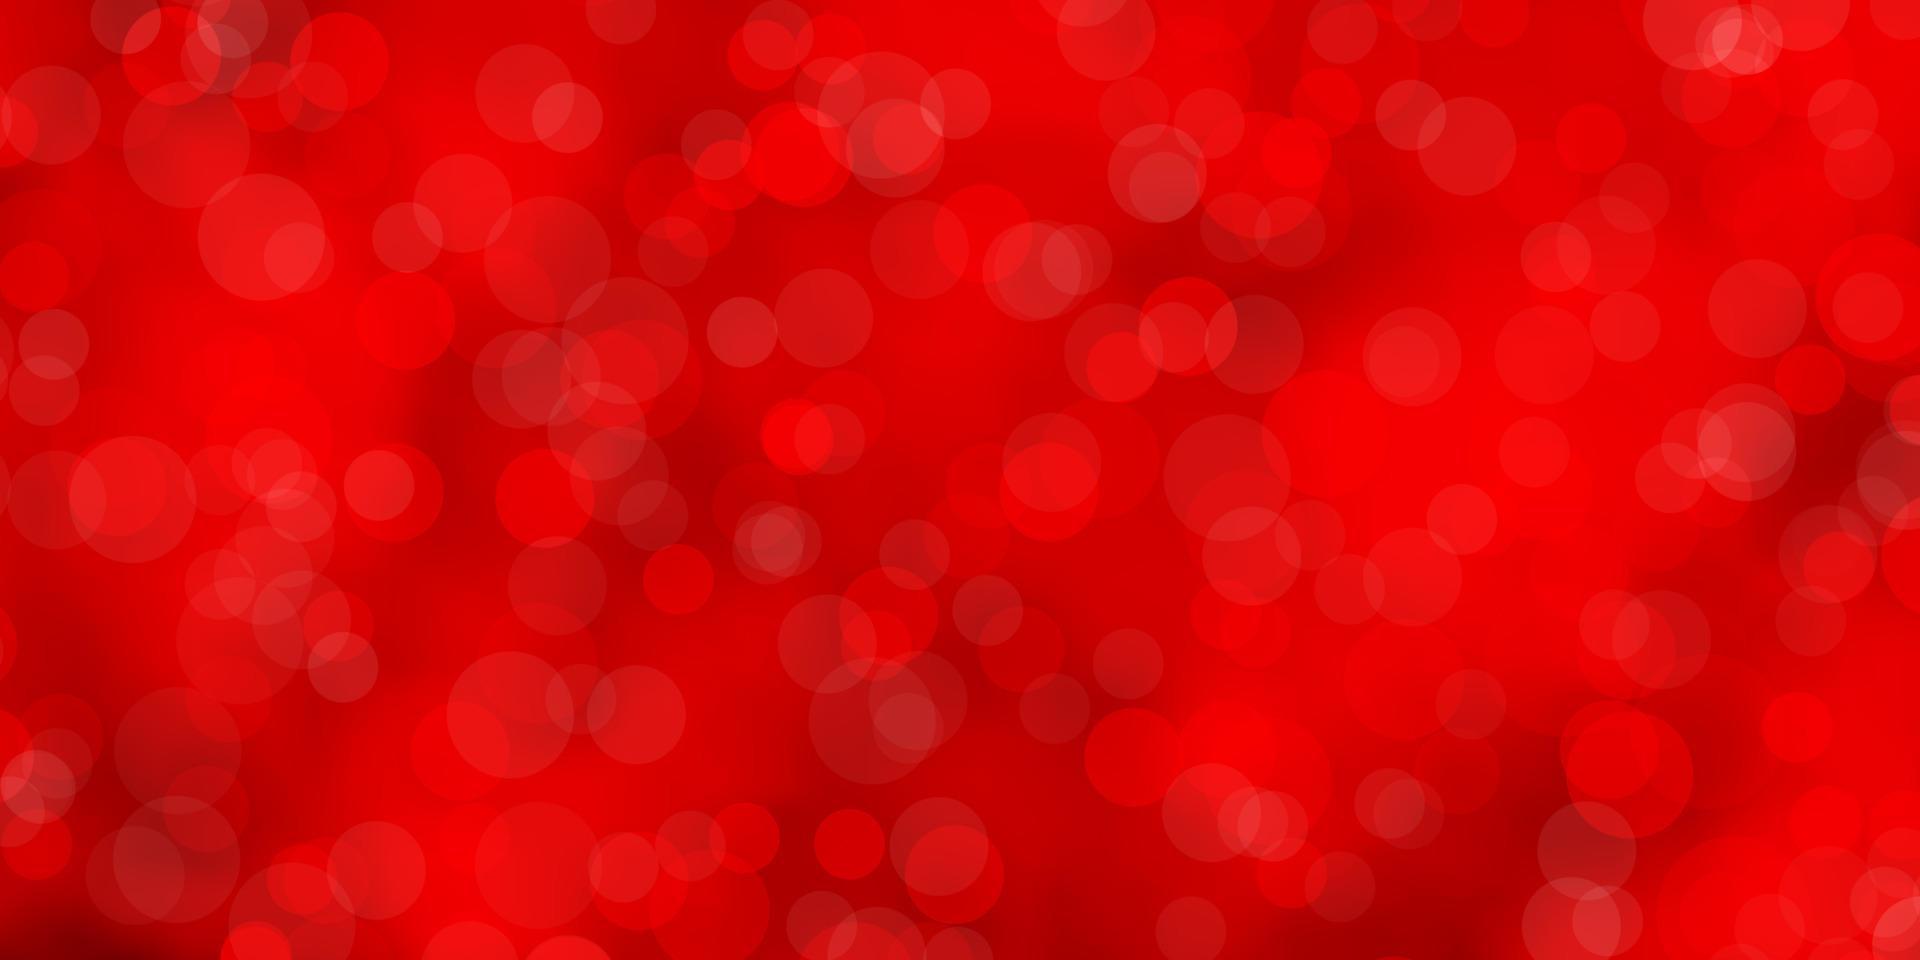 pano de fundo vector vermelho escuro com círculos.